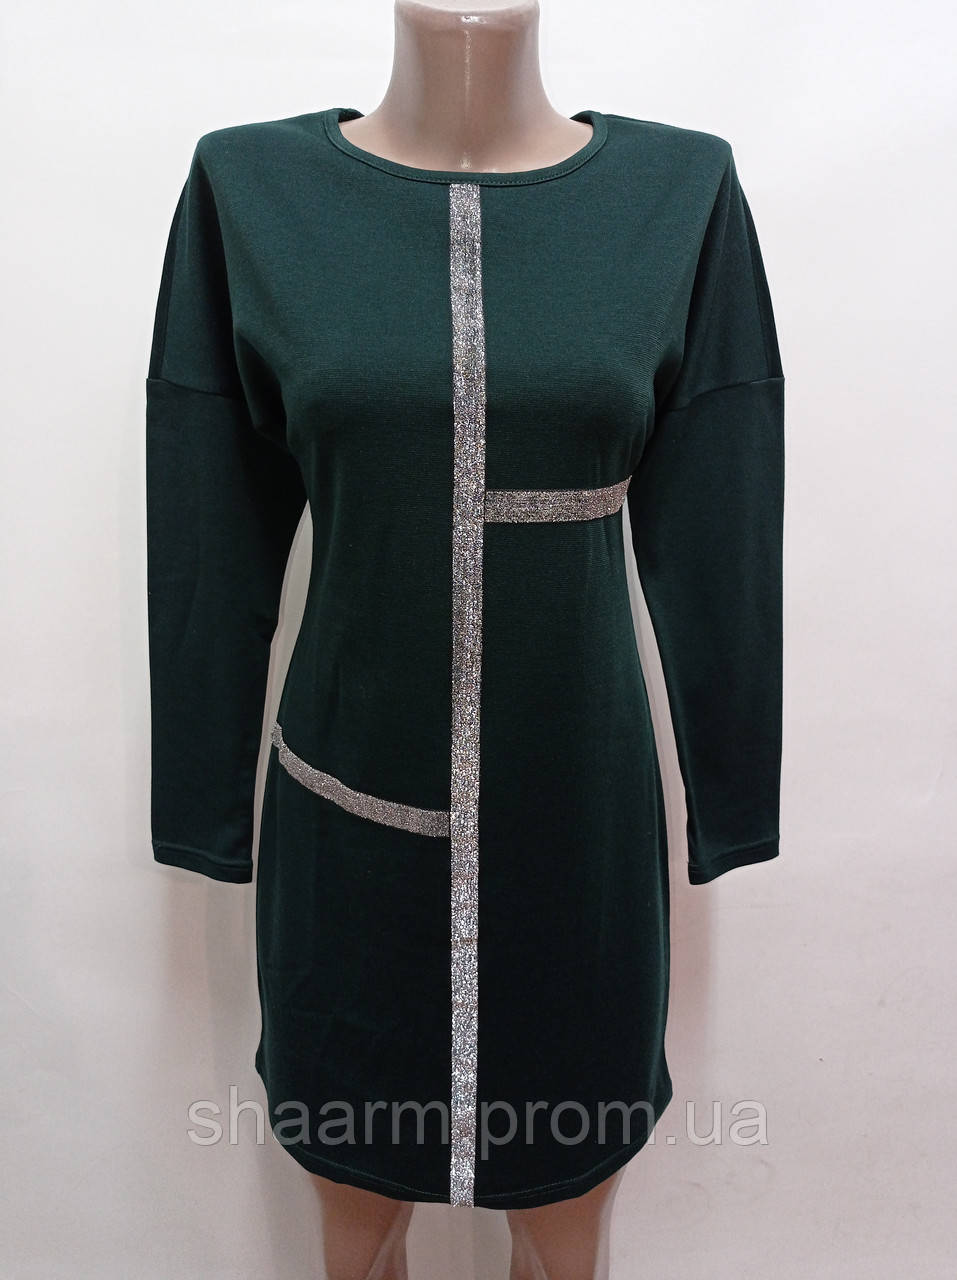 Плаття жіноче темно-зелене французький трикотаж зі сріблястою тасьмою